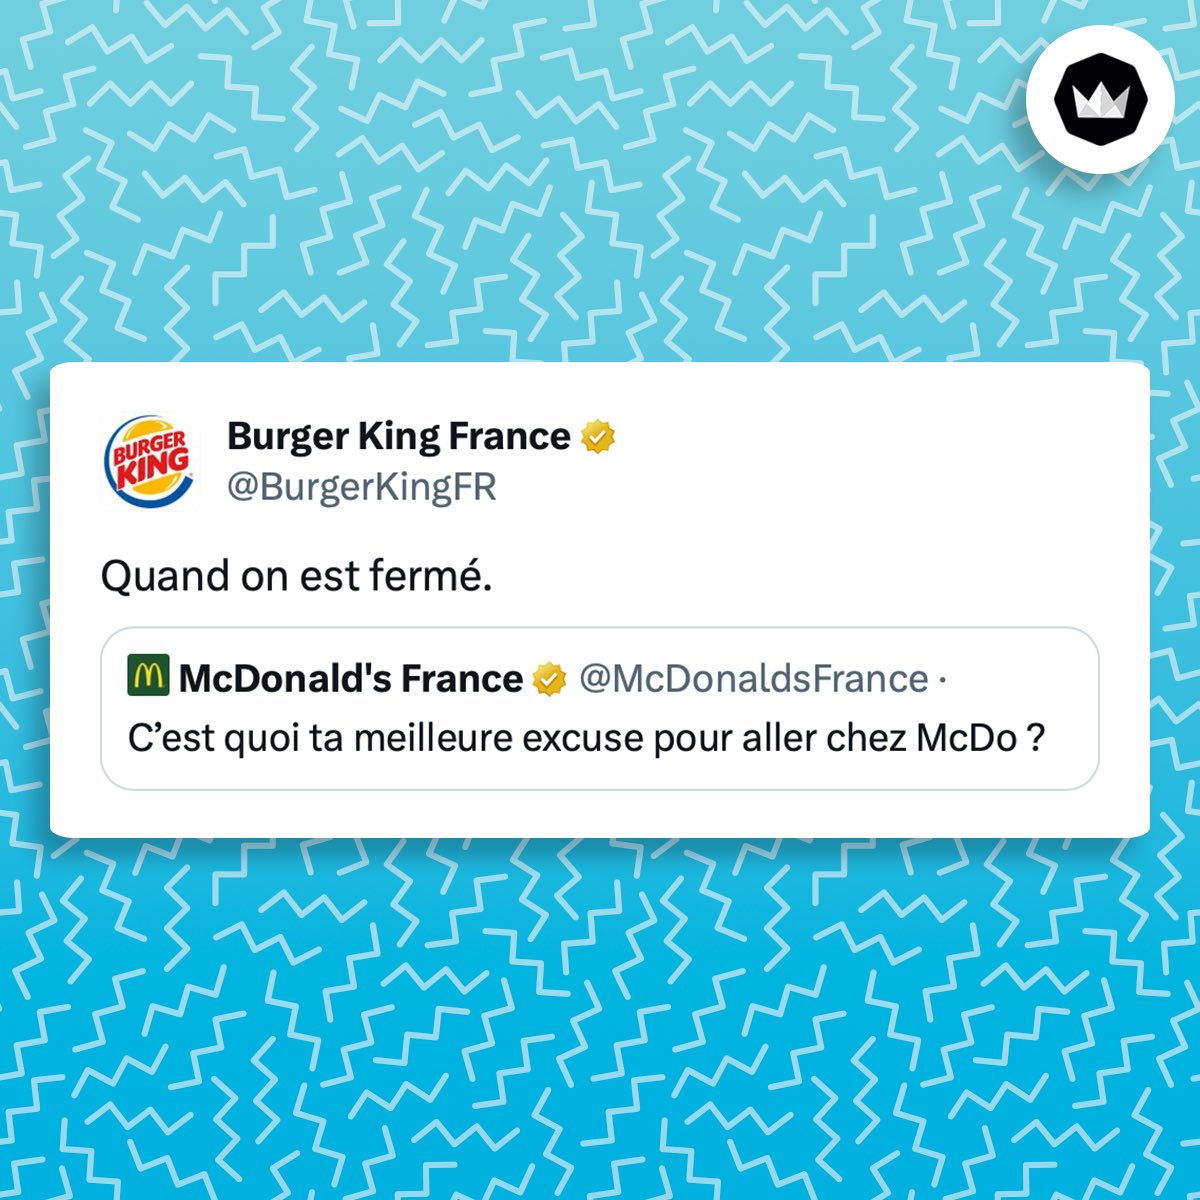 tweet de Burger King : "quand on est fermé" Il répond à un tweet de McDonald's France : "C’est quoi ta meilleure excuse pour aller chez McDo ?"